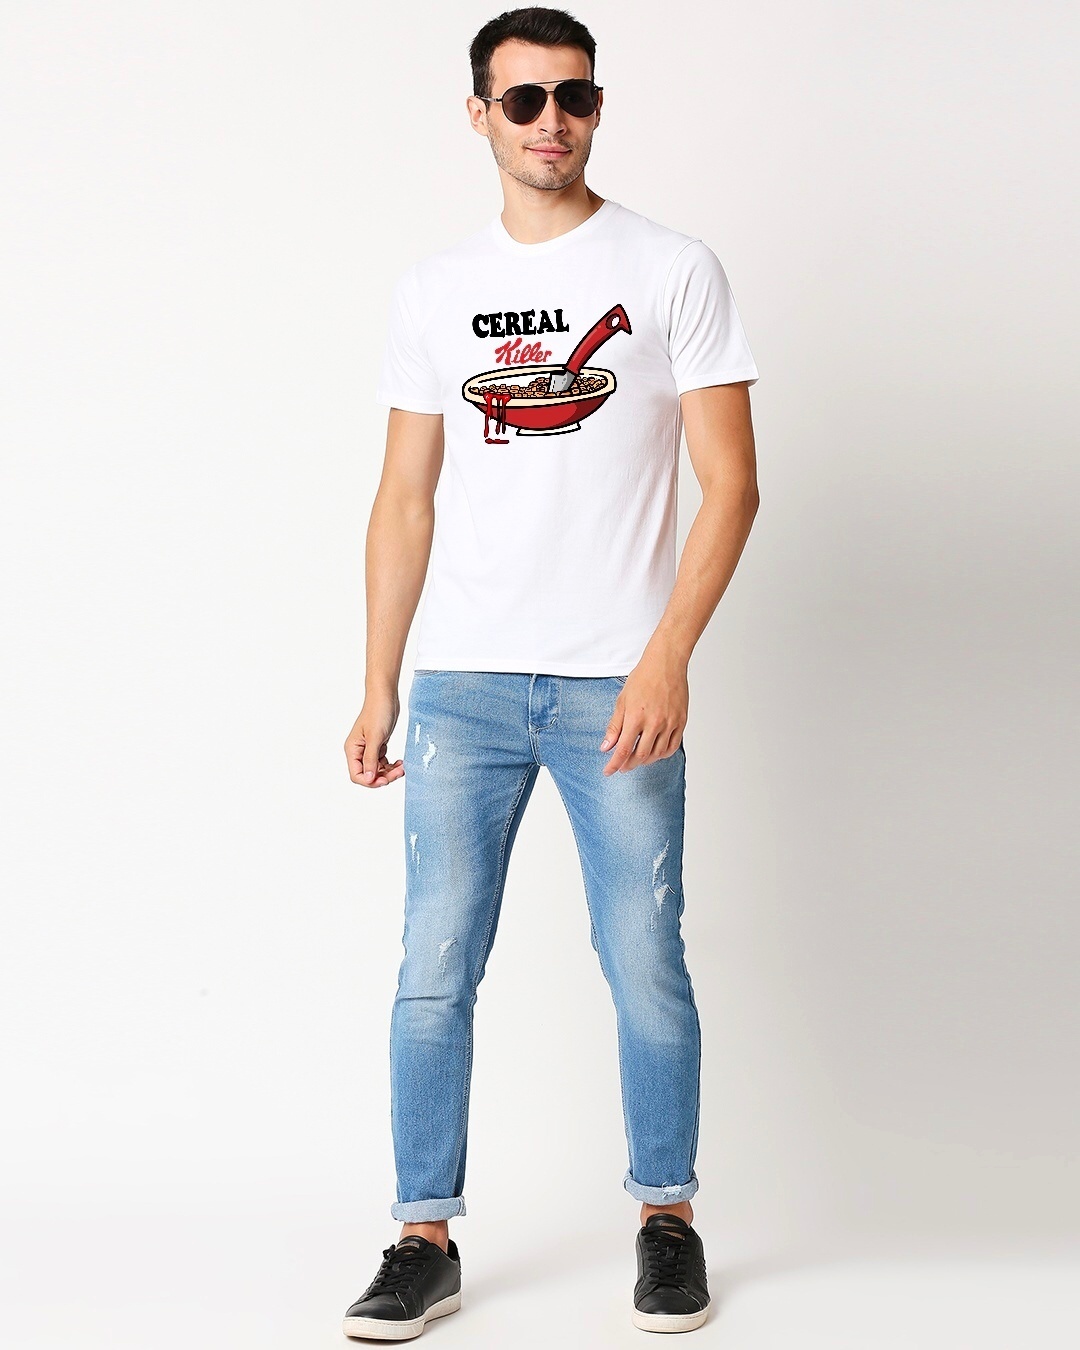 Buy Men's White Cereal Killer Printed T-shirt for Men White Online at